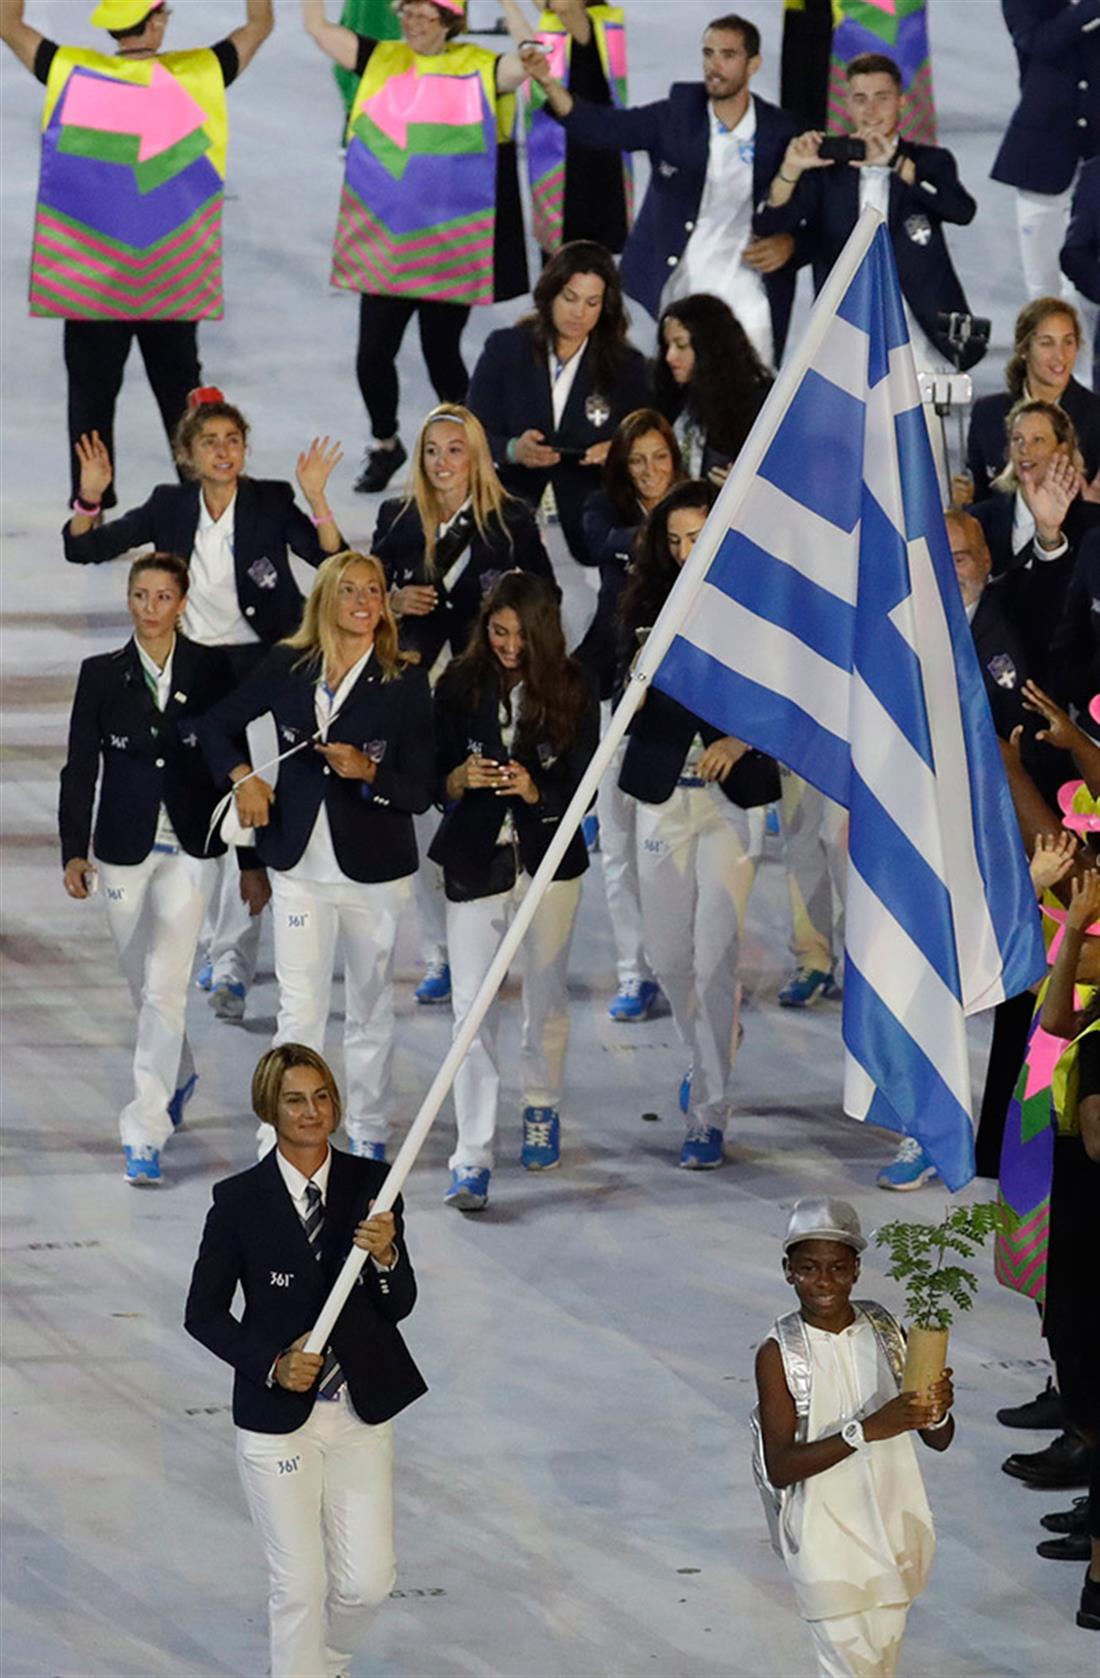 Ολυμπιακοί Αγώνες 2016 - Ρίο - τελετή έναρξης - Ελληνική αποστολή